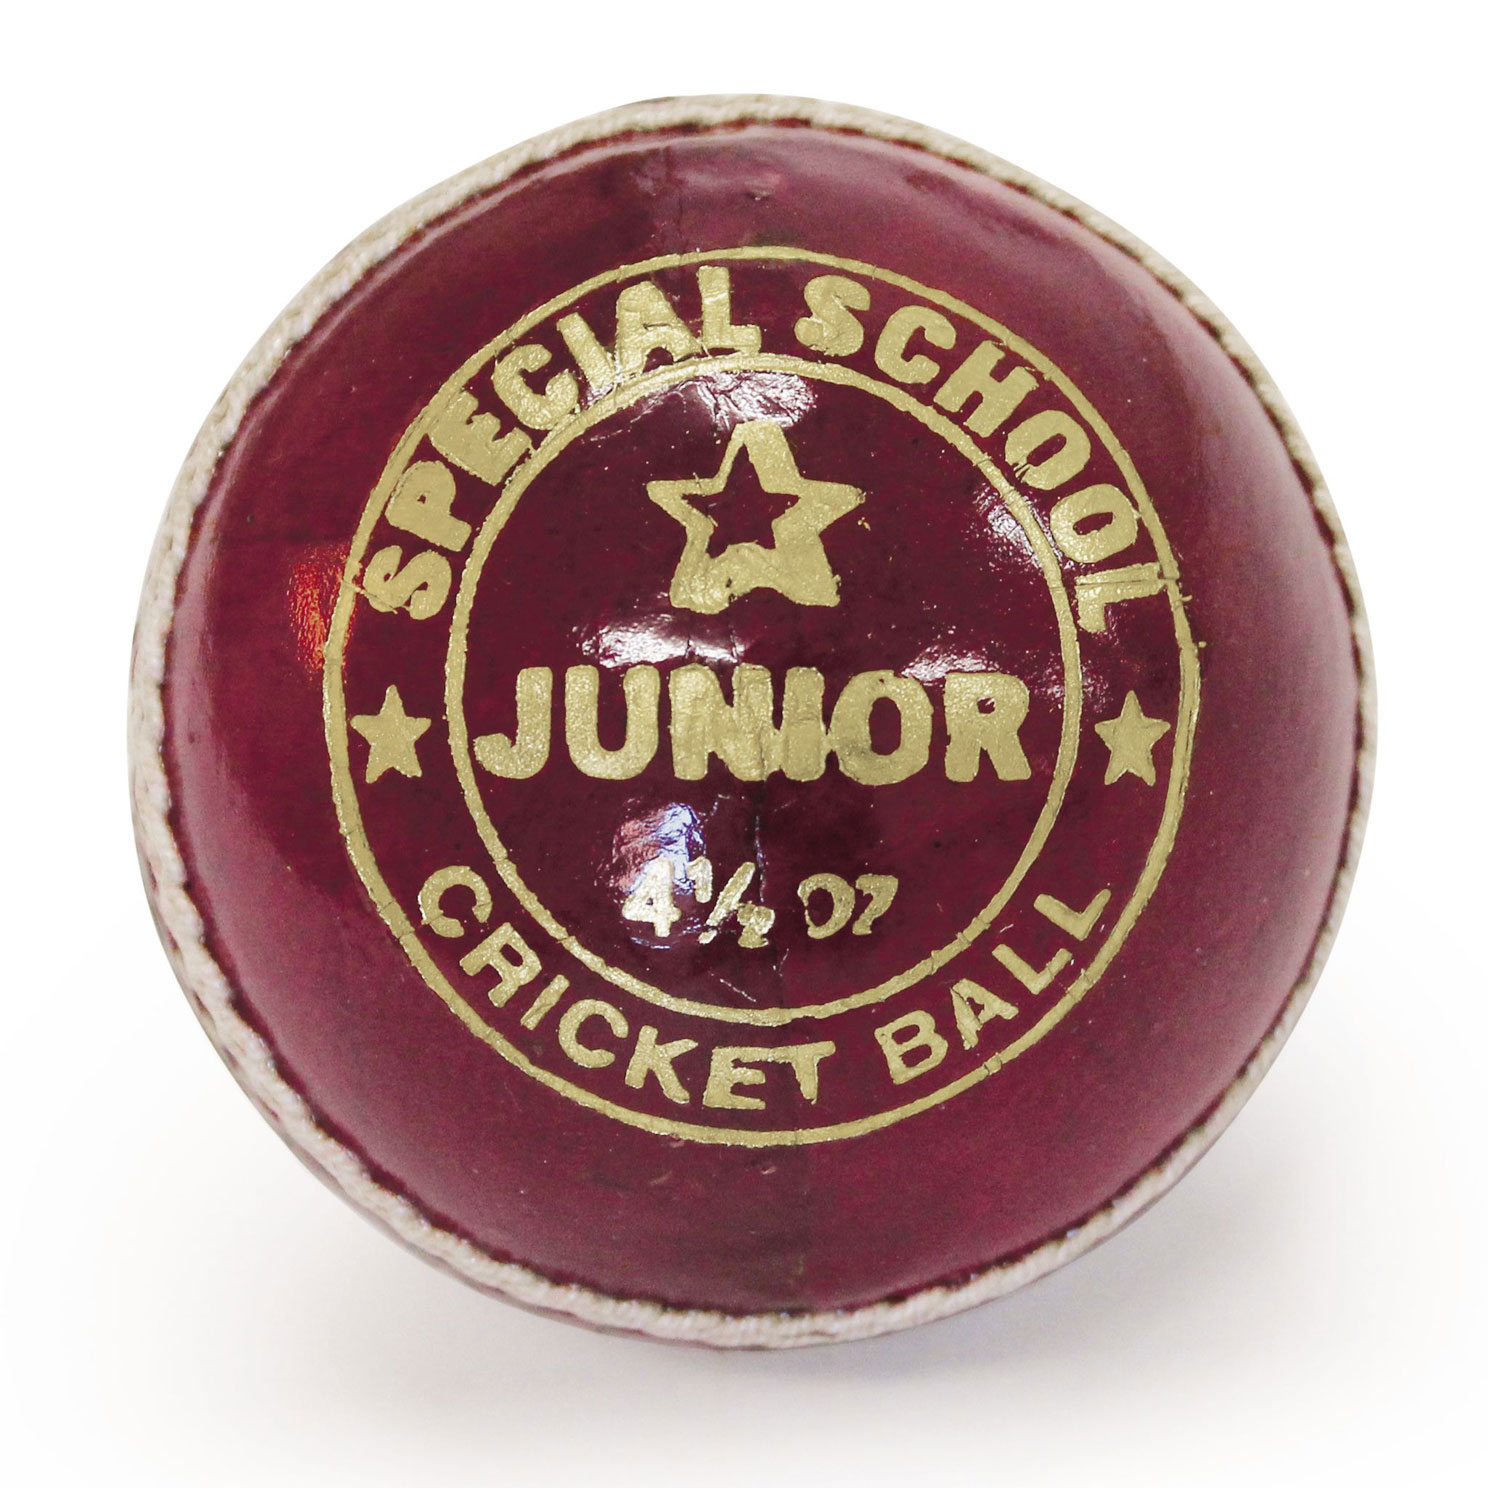 Mastersport Special School Cricket Ball